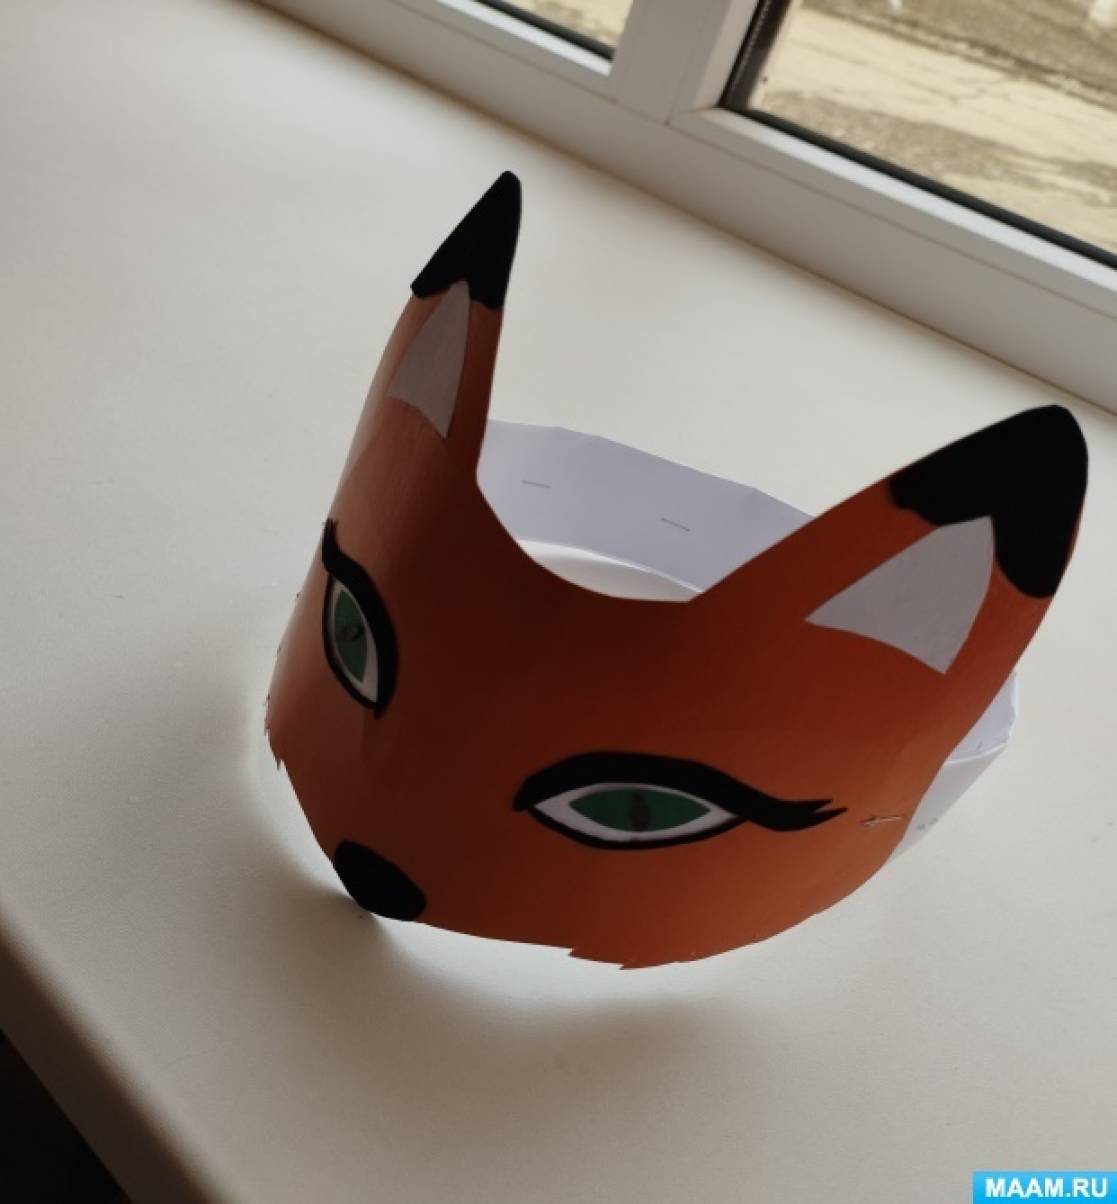 Что надо для создания маски лисы?